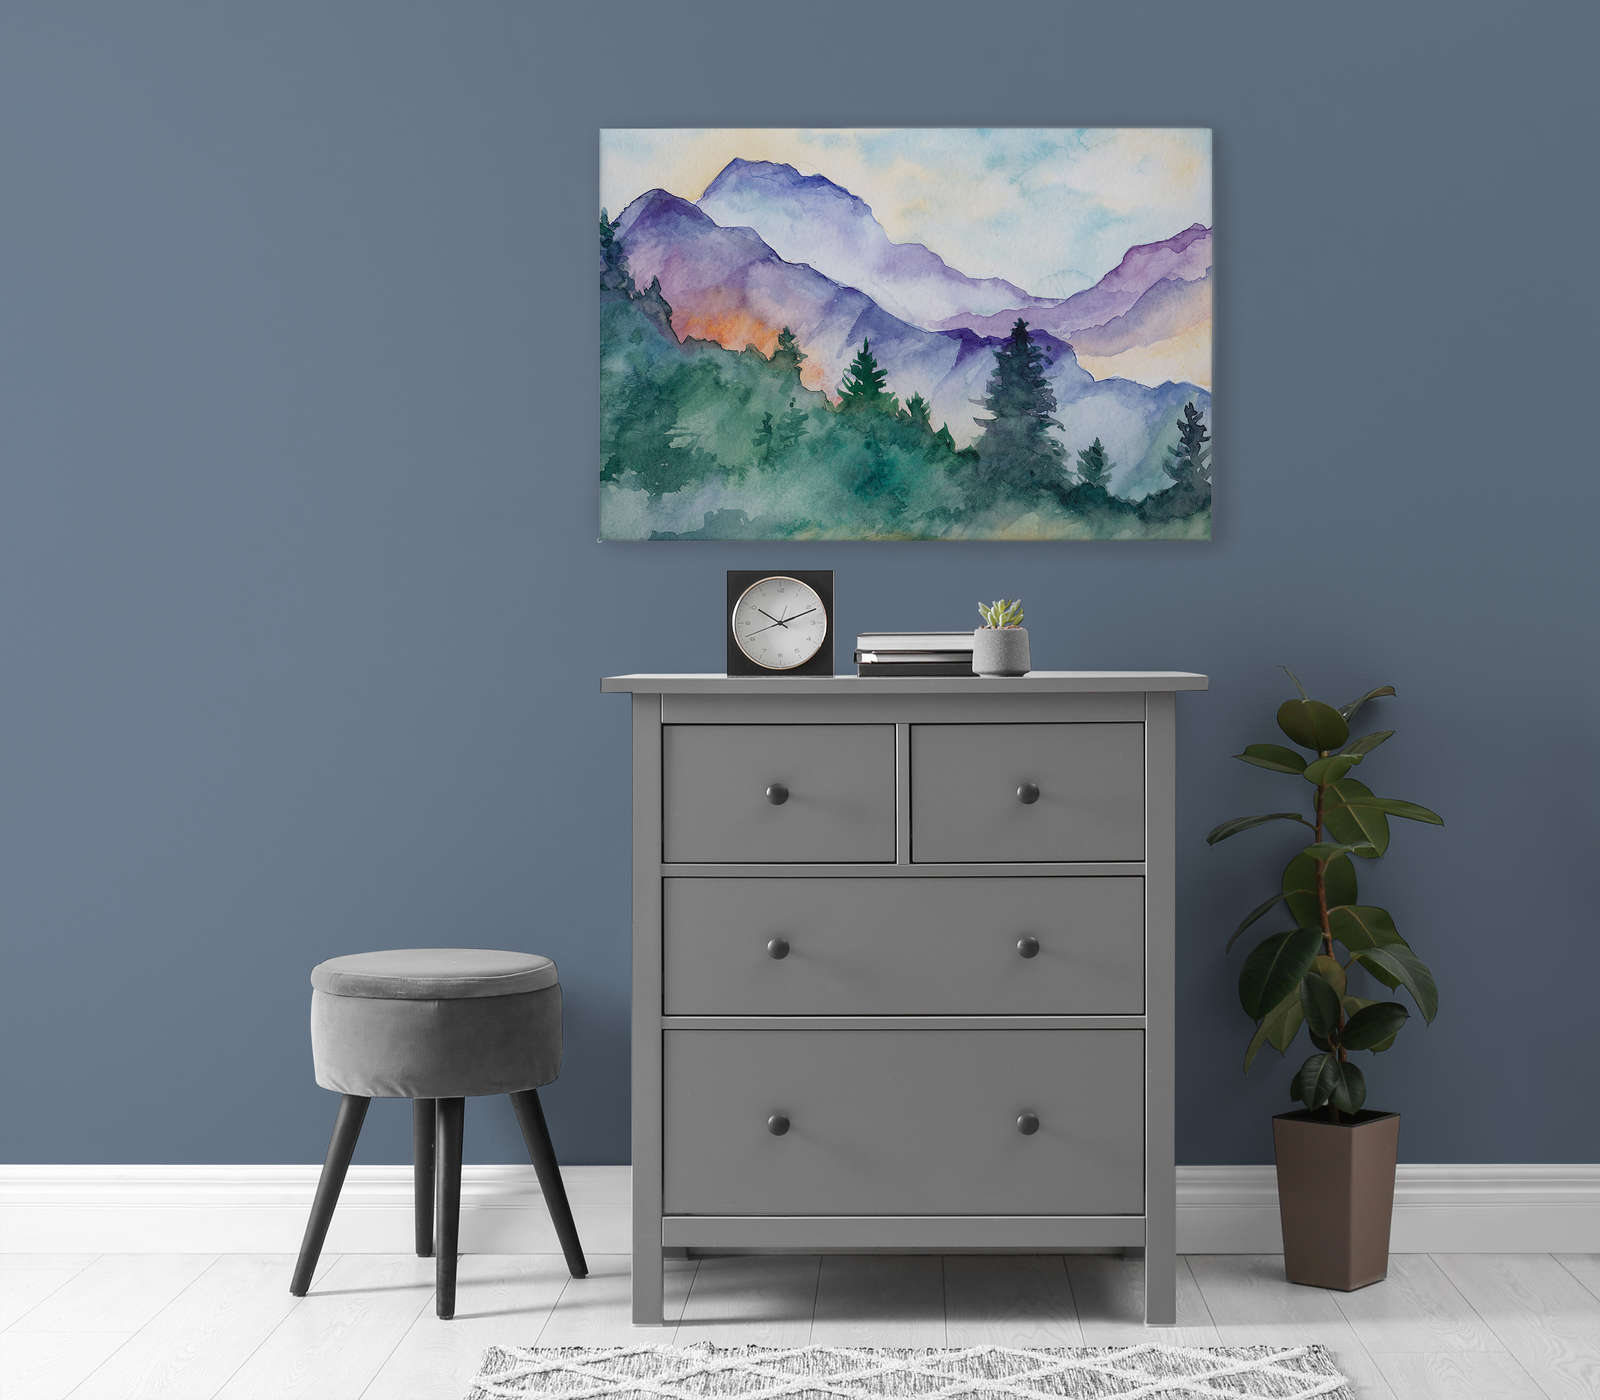             Canvas schilderij berglandschap geschilderd met waterverf - 0,90 m x 0,60 m
        